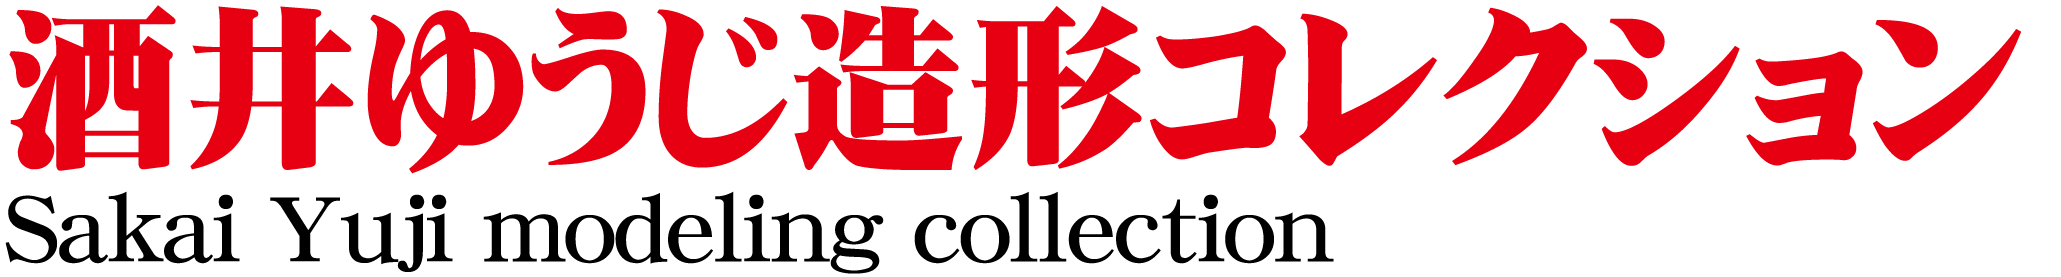 Sakai Yuji modeling collection